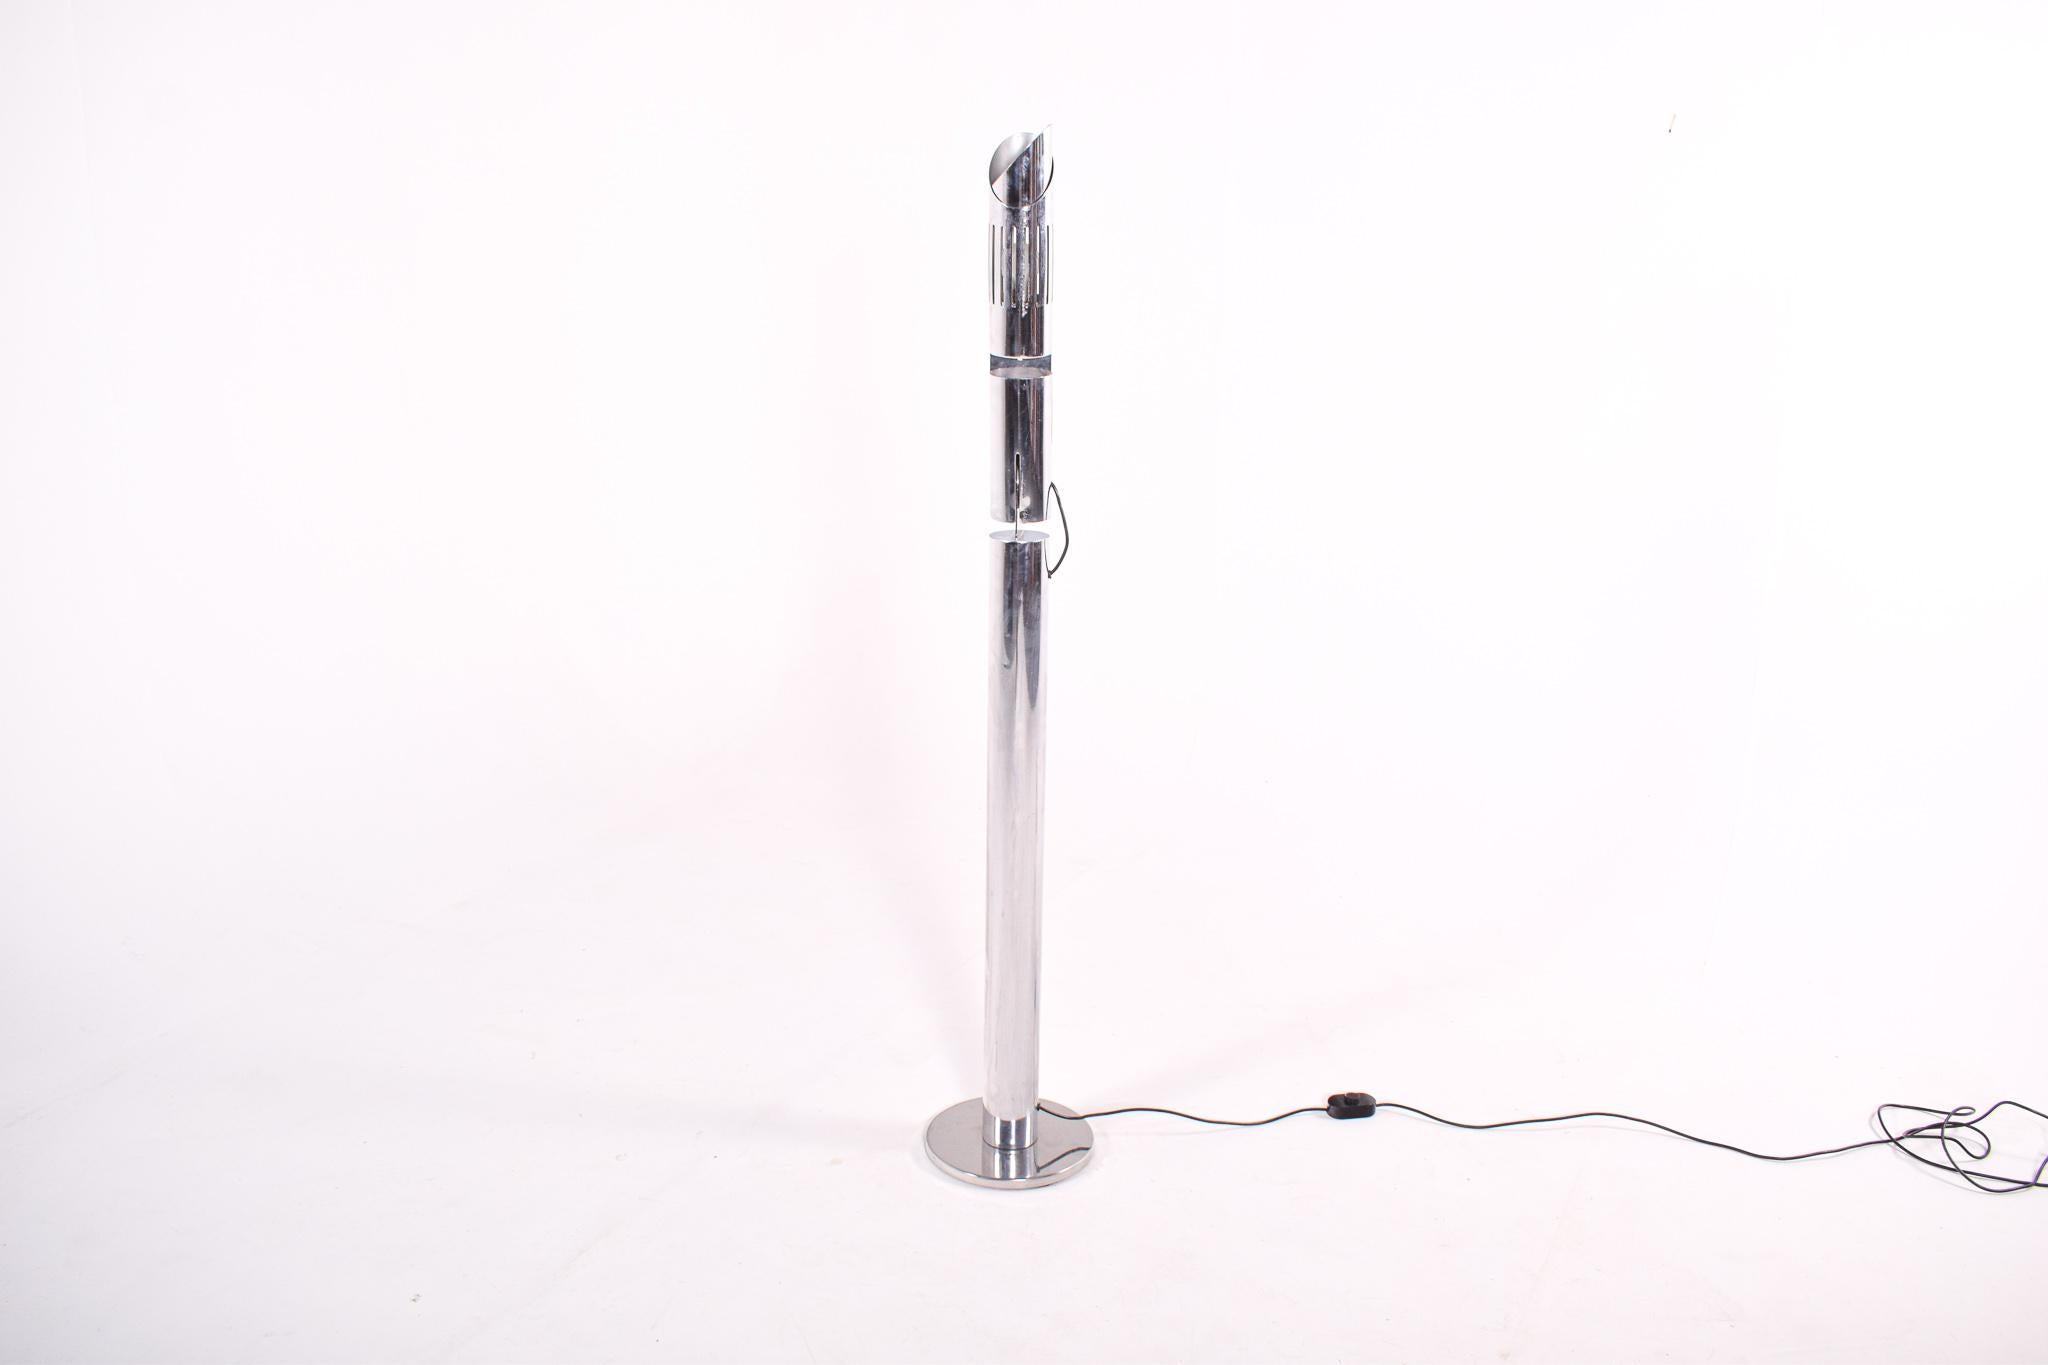 Ce lampadaire chromé, conçu par Gabriele D'Ali vers 1970 et fabriqué par Enzo Francesconi, est un excellent exemple de la philosophie du design épuré et fonctionnel de l'époque. Avec sa finition en chrome poli, la lampe dégage une esthétique de